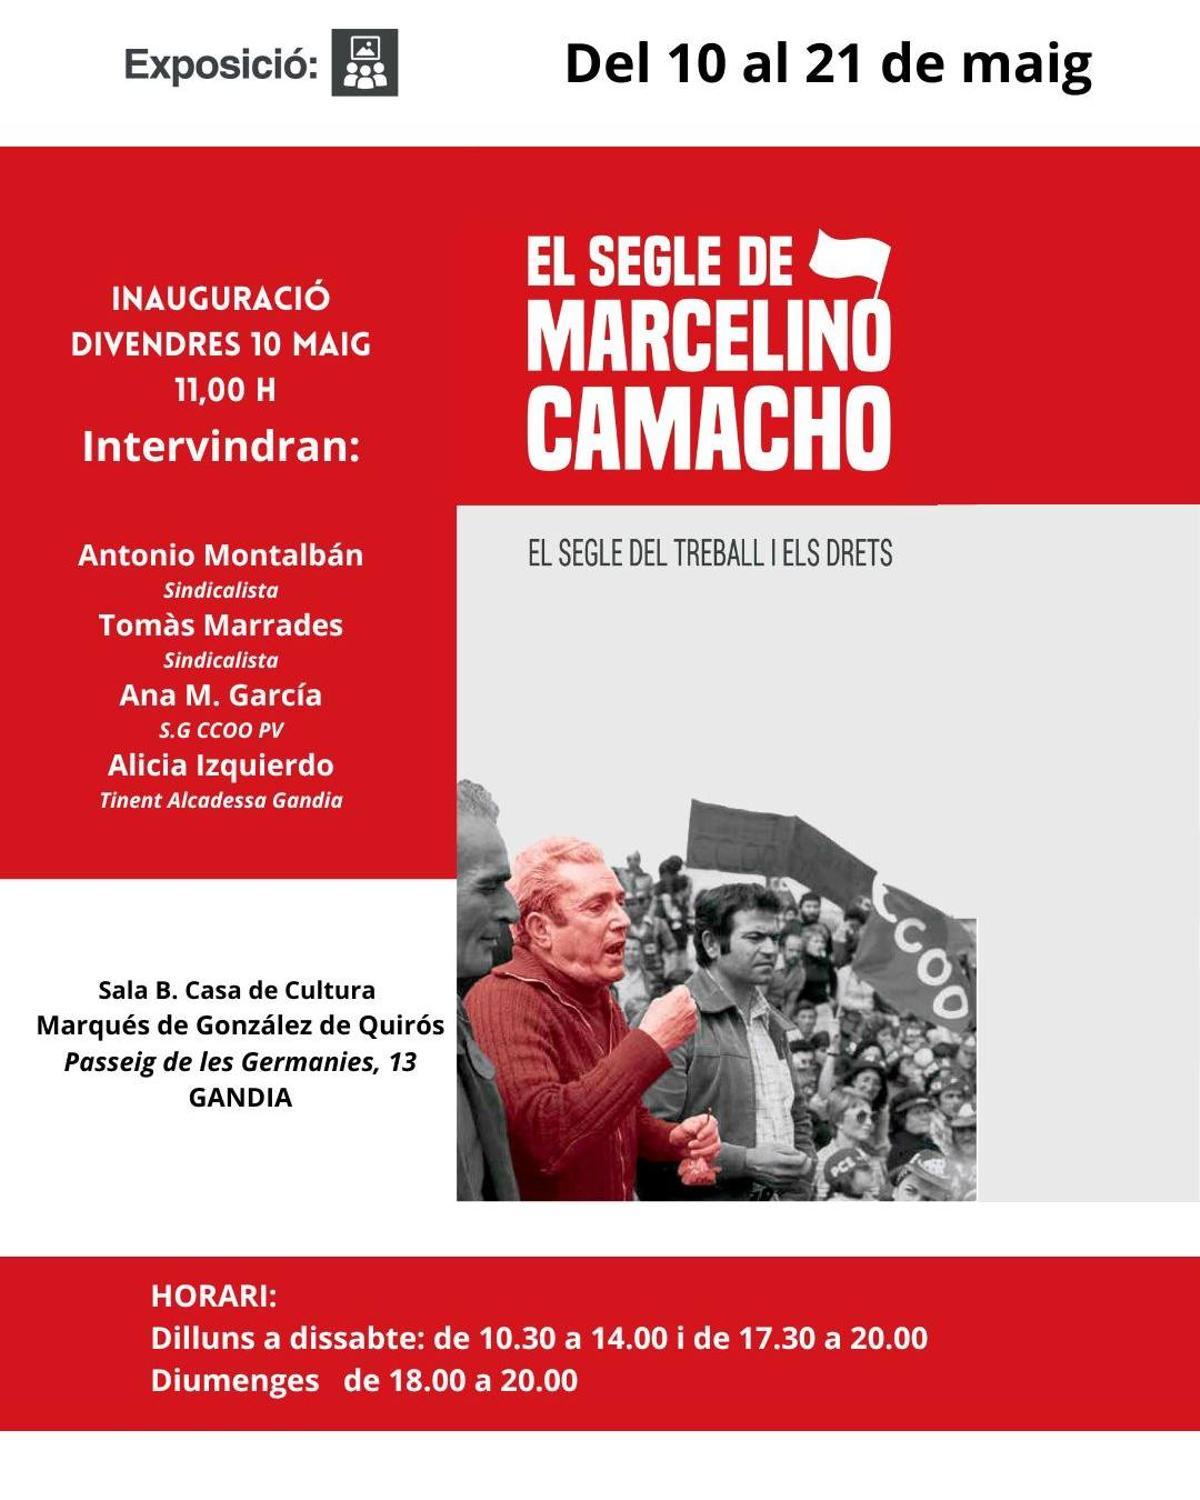 Imagen del cartel de la exposición sobre Marcelino Camacho